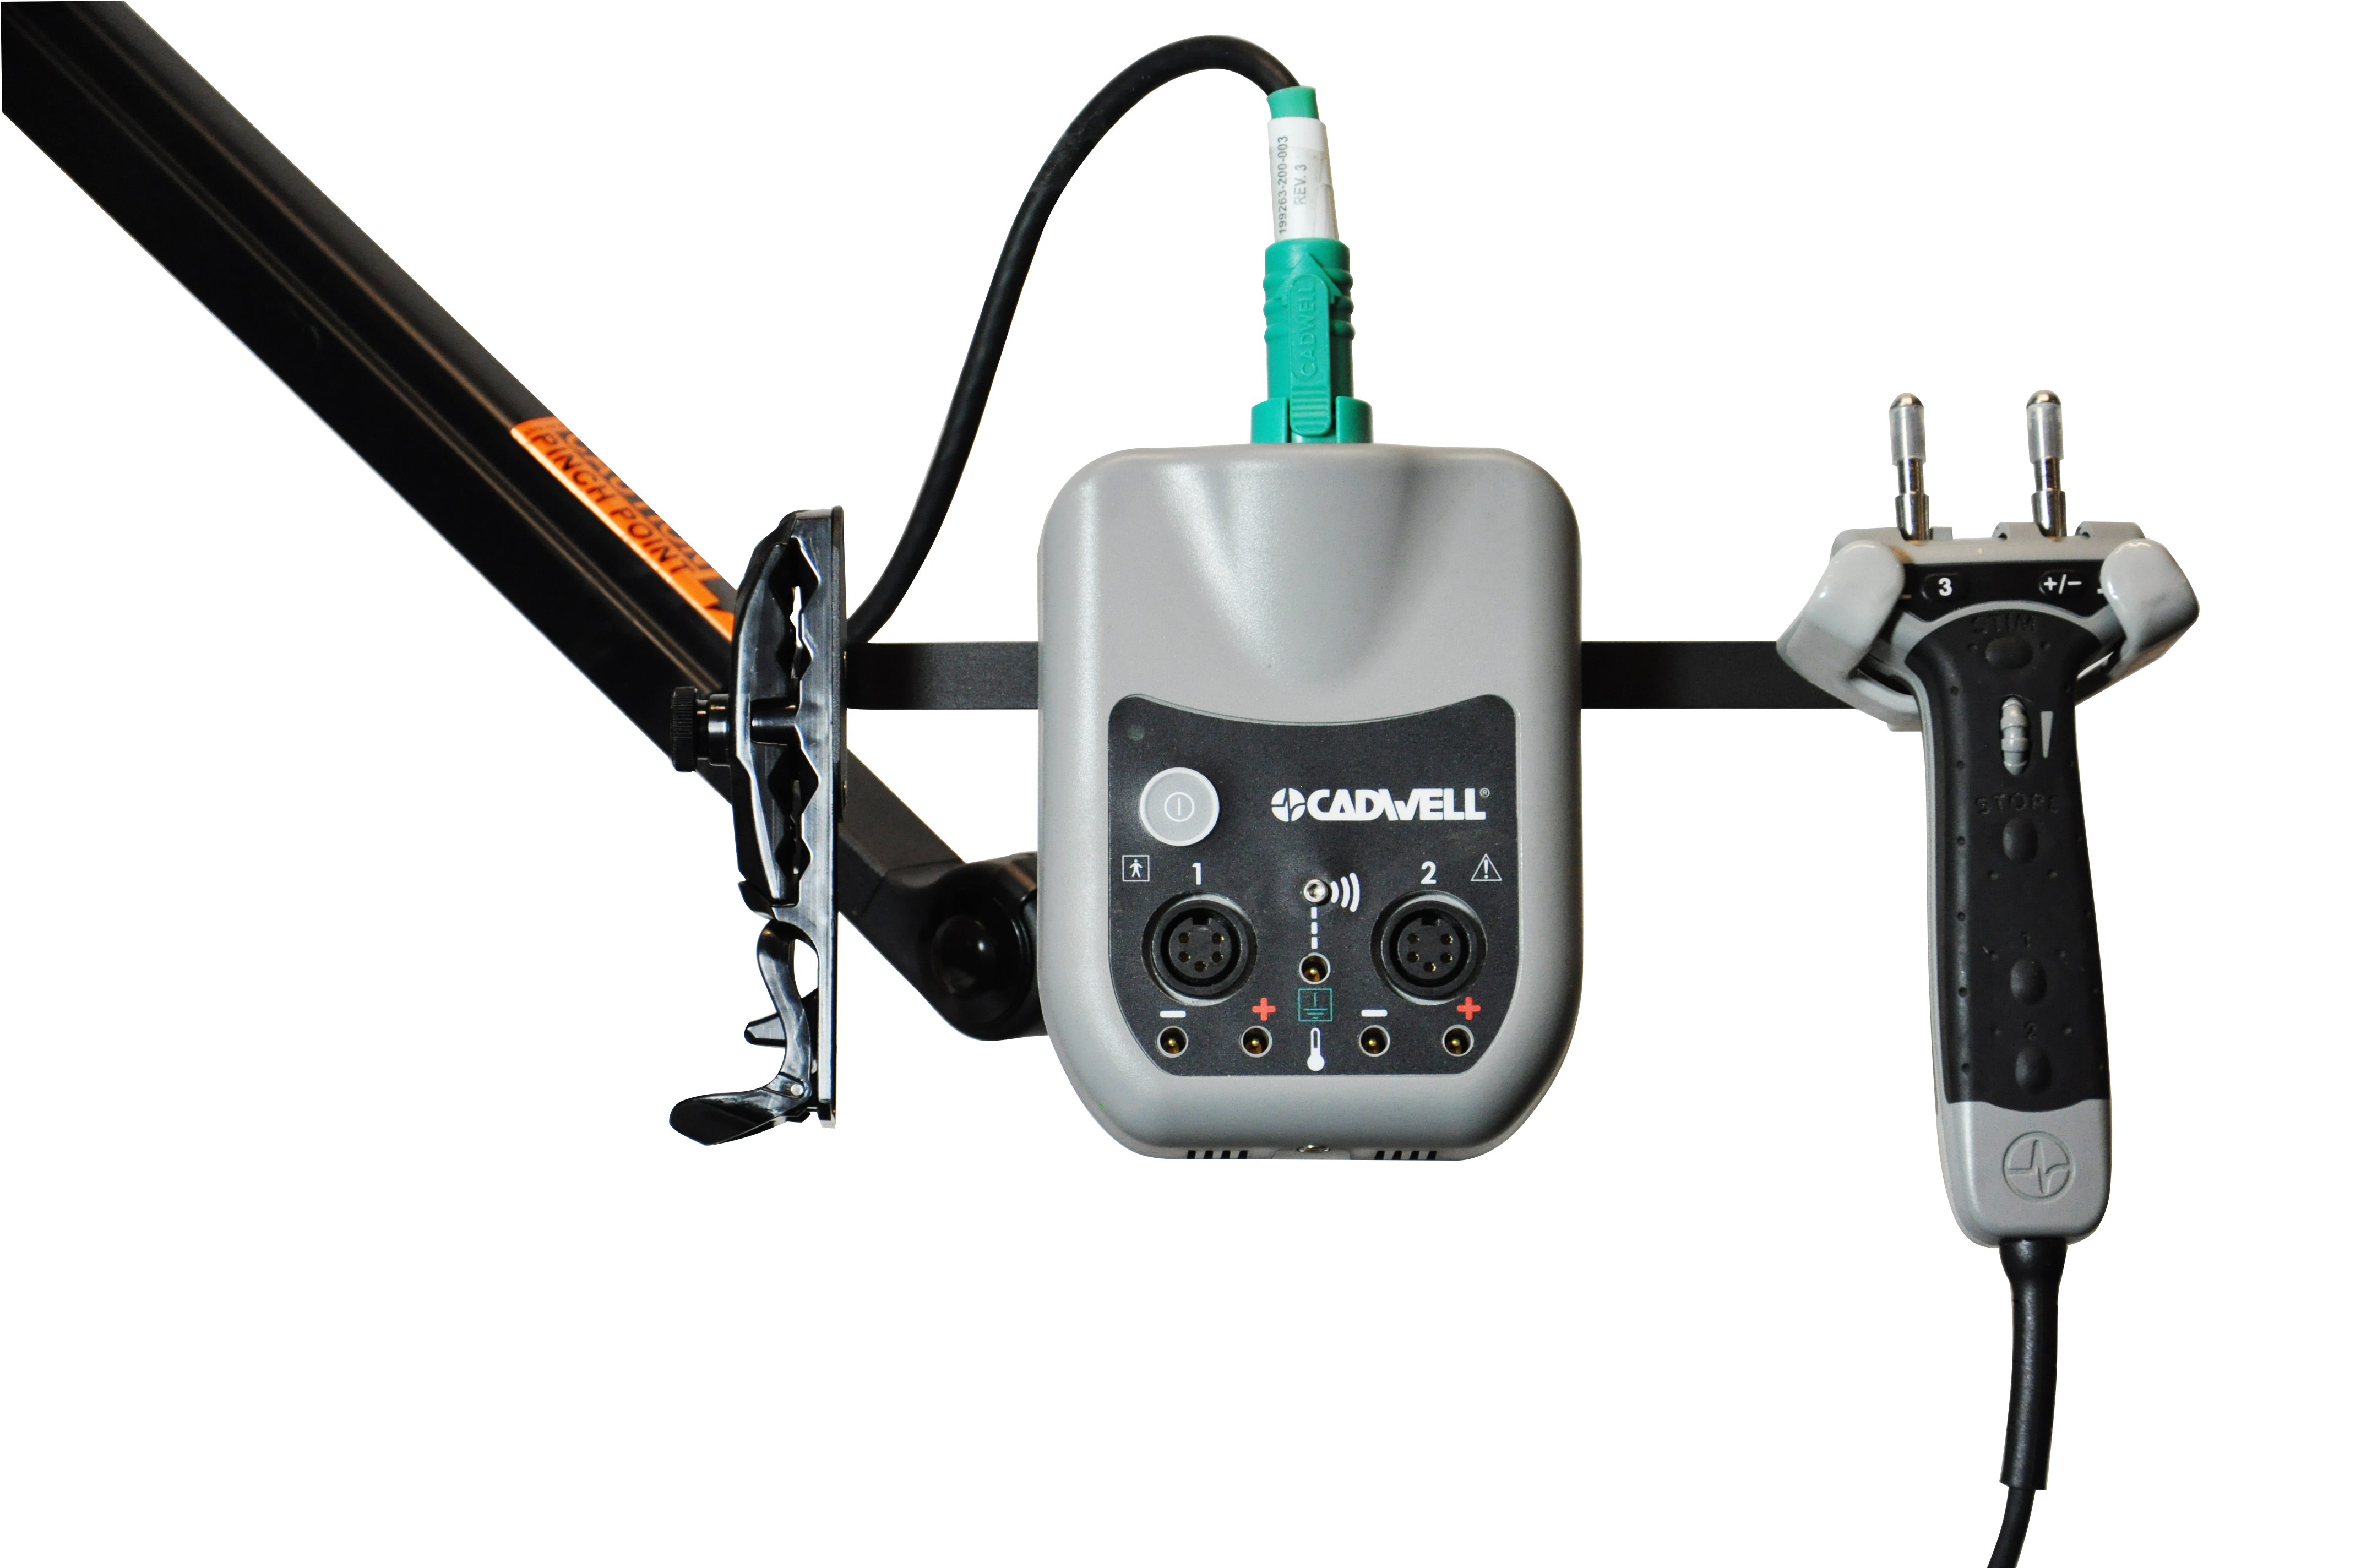 Cadwell-EMG-sierra-1-2-channel-amplifier-with-stimulator